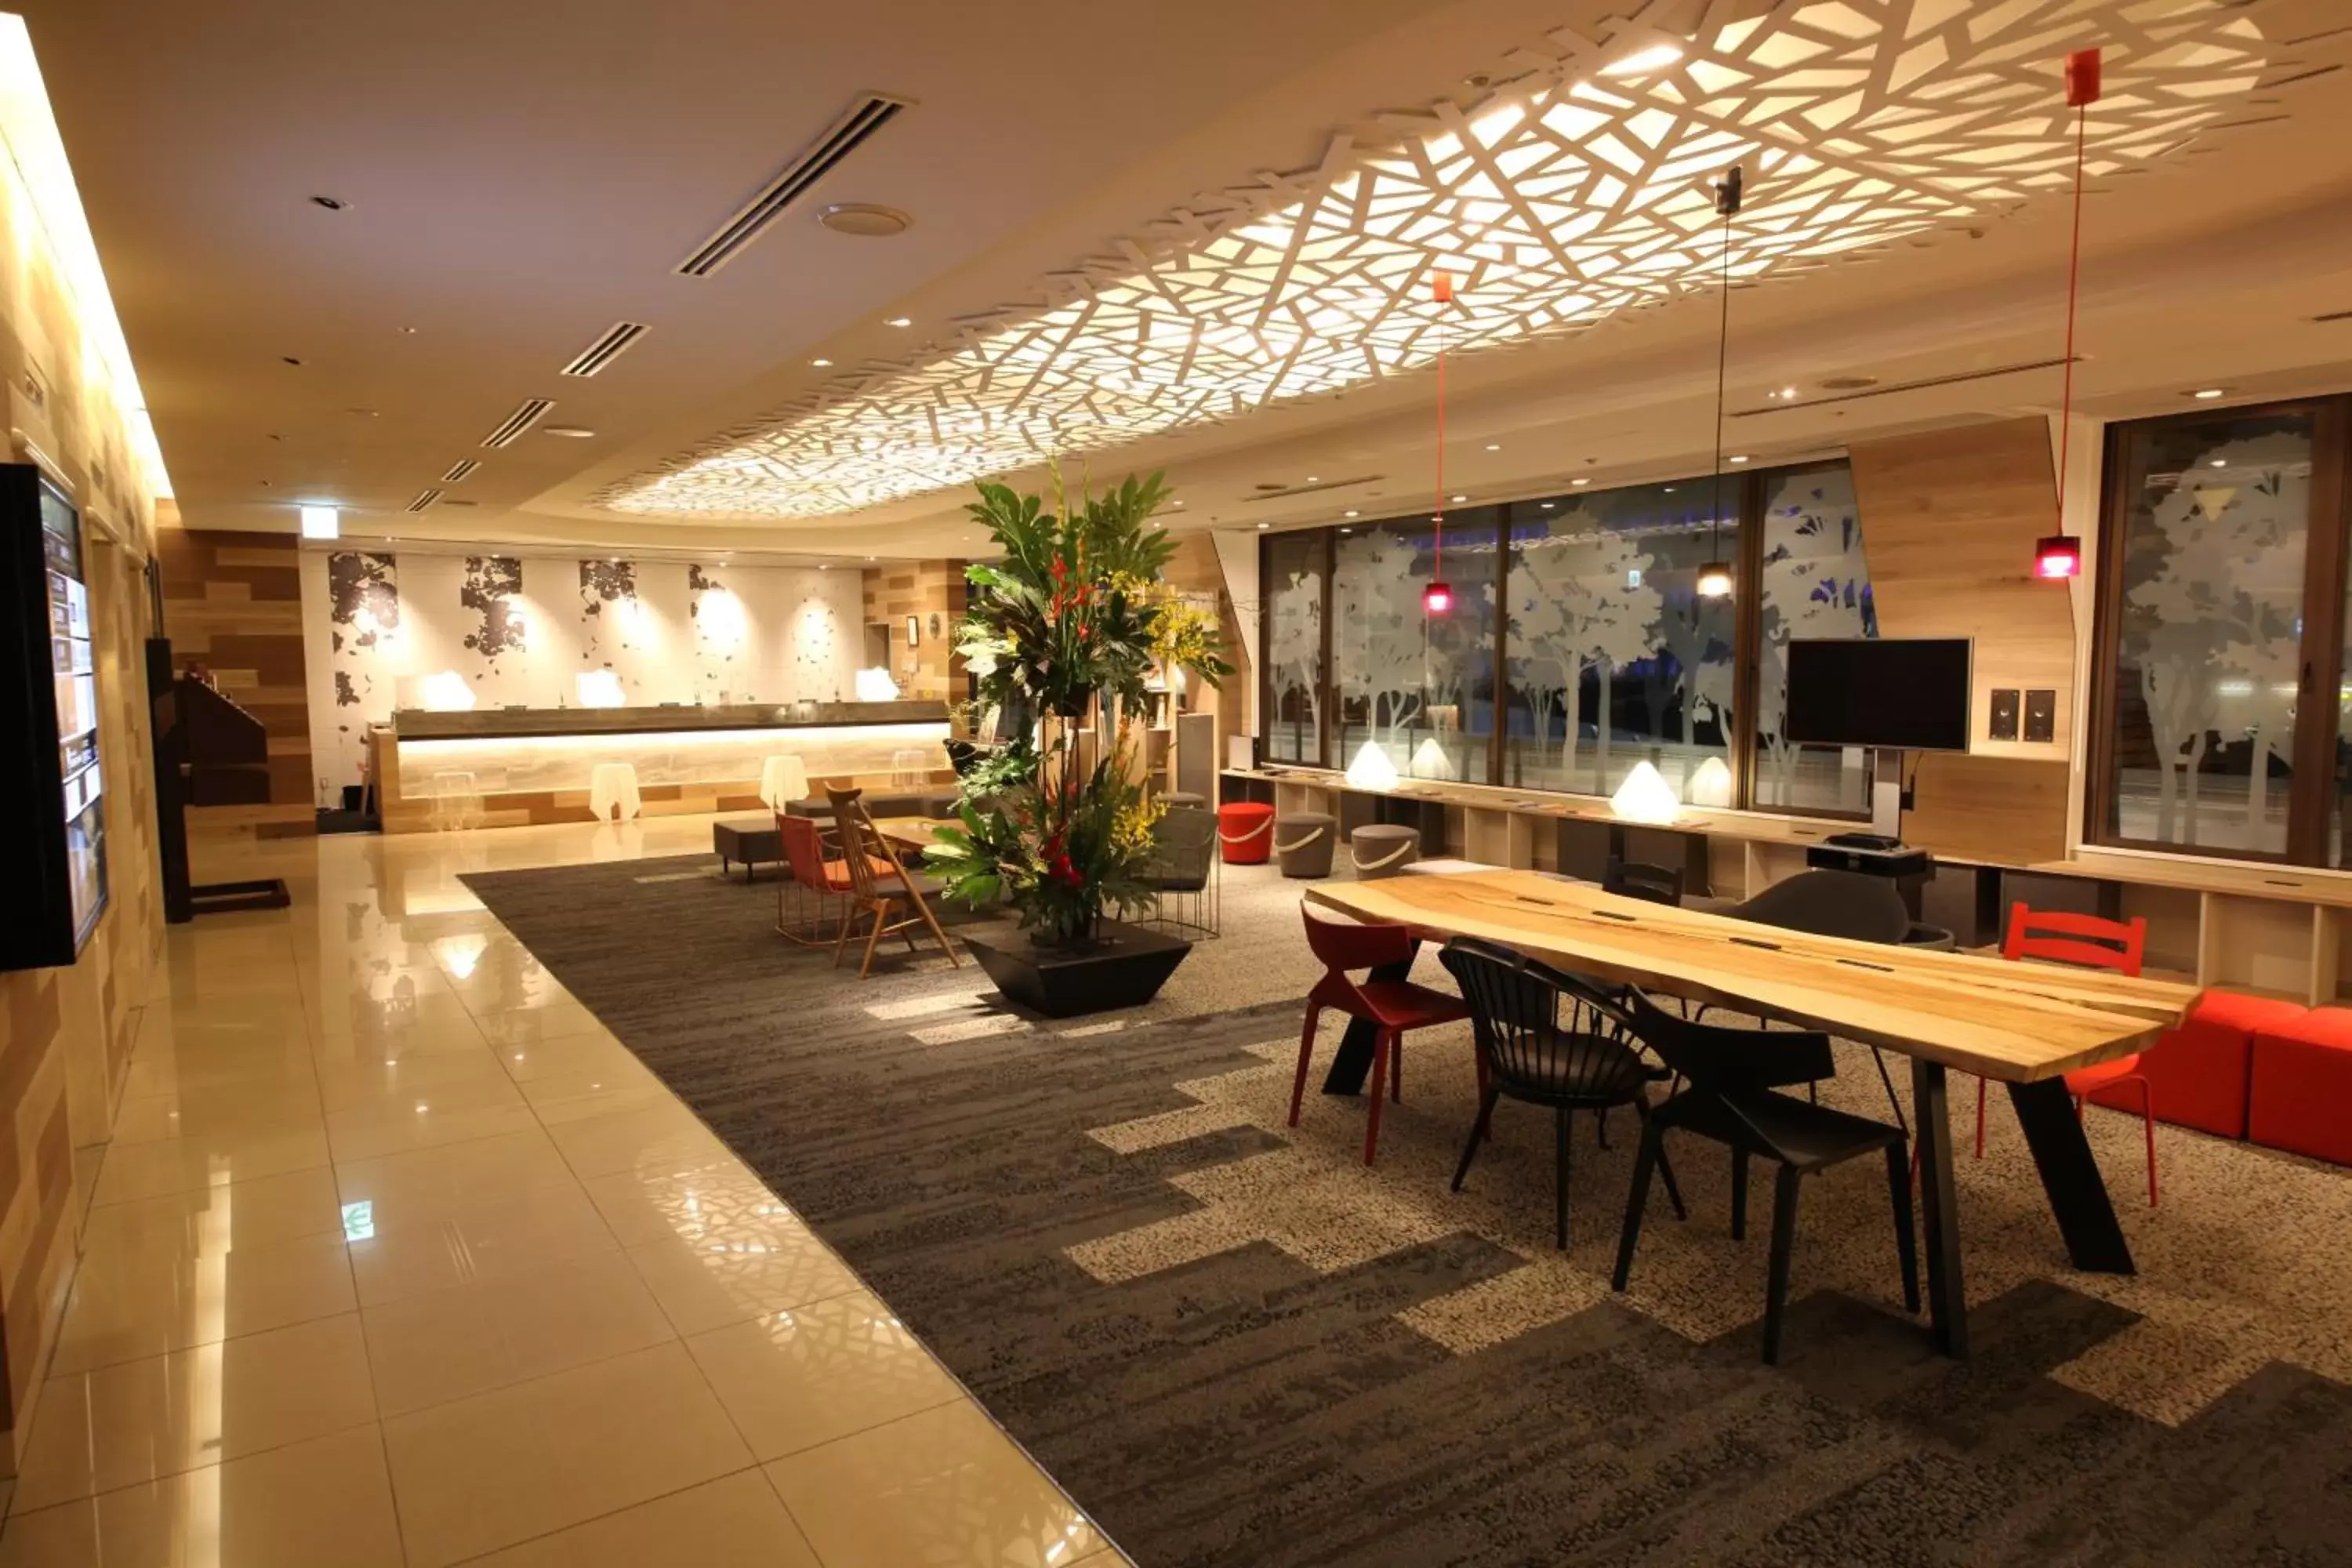 Lobby or reception in Kichijoji Tokyu REI Hotel